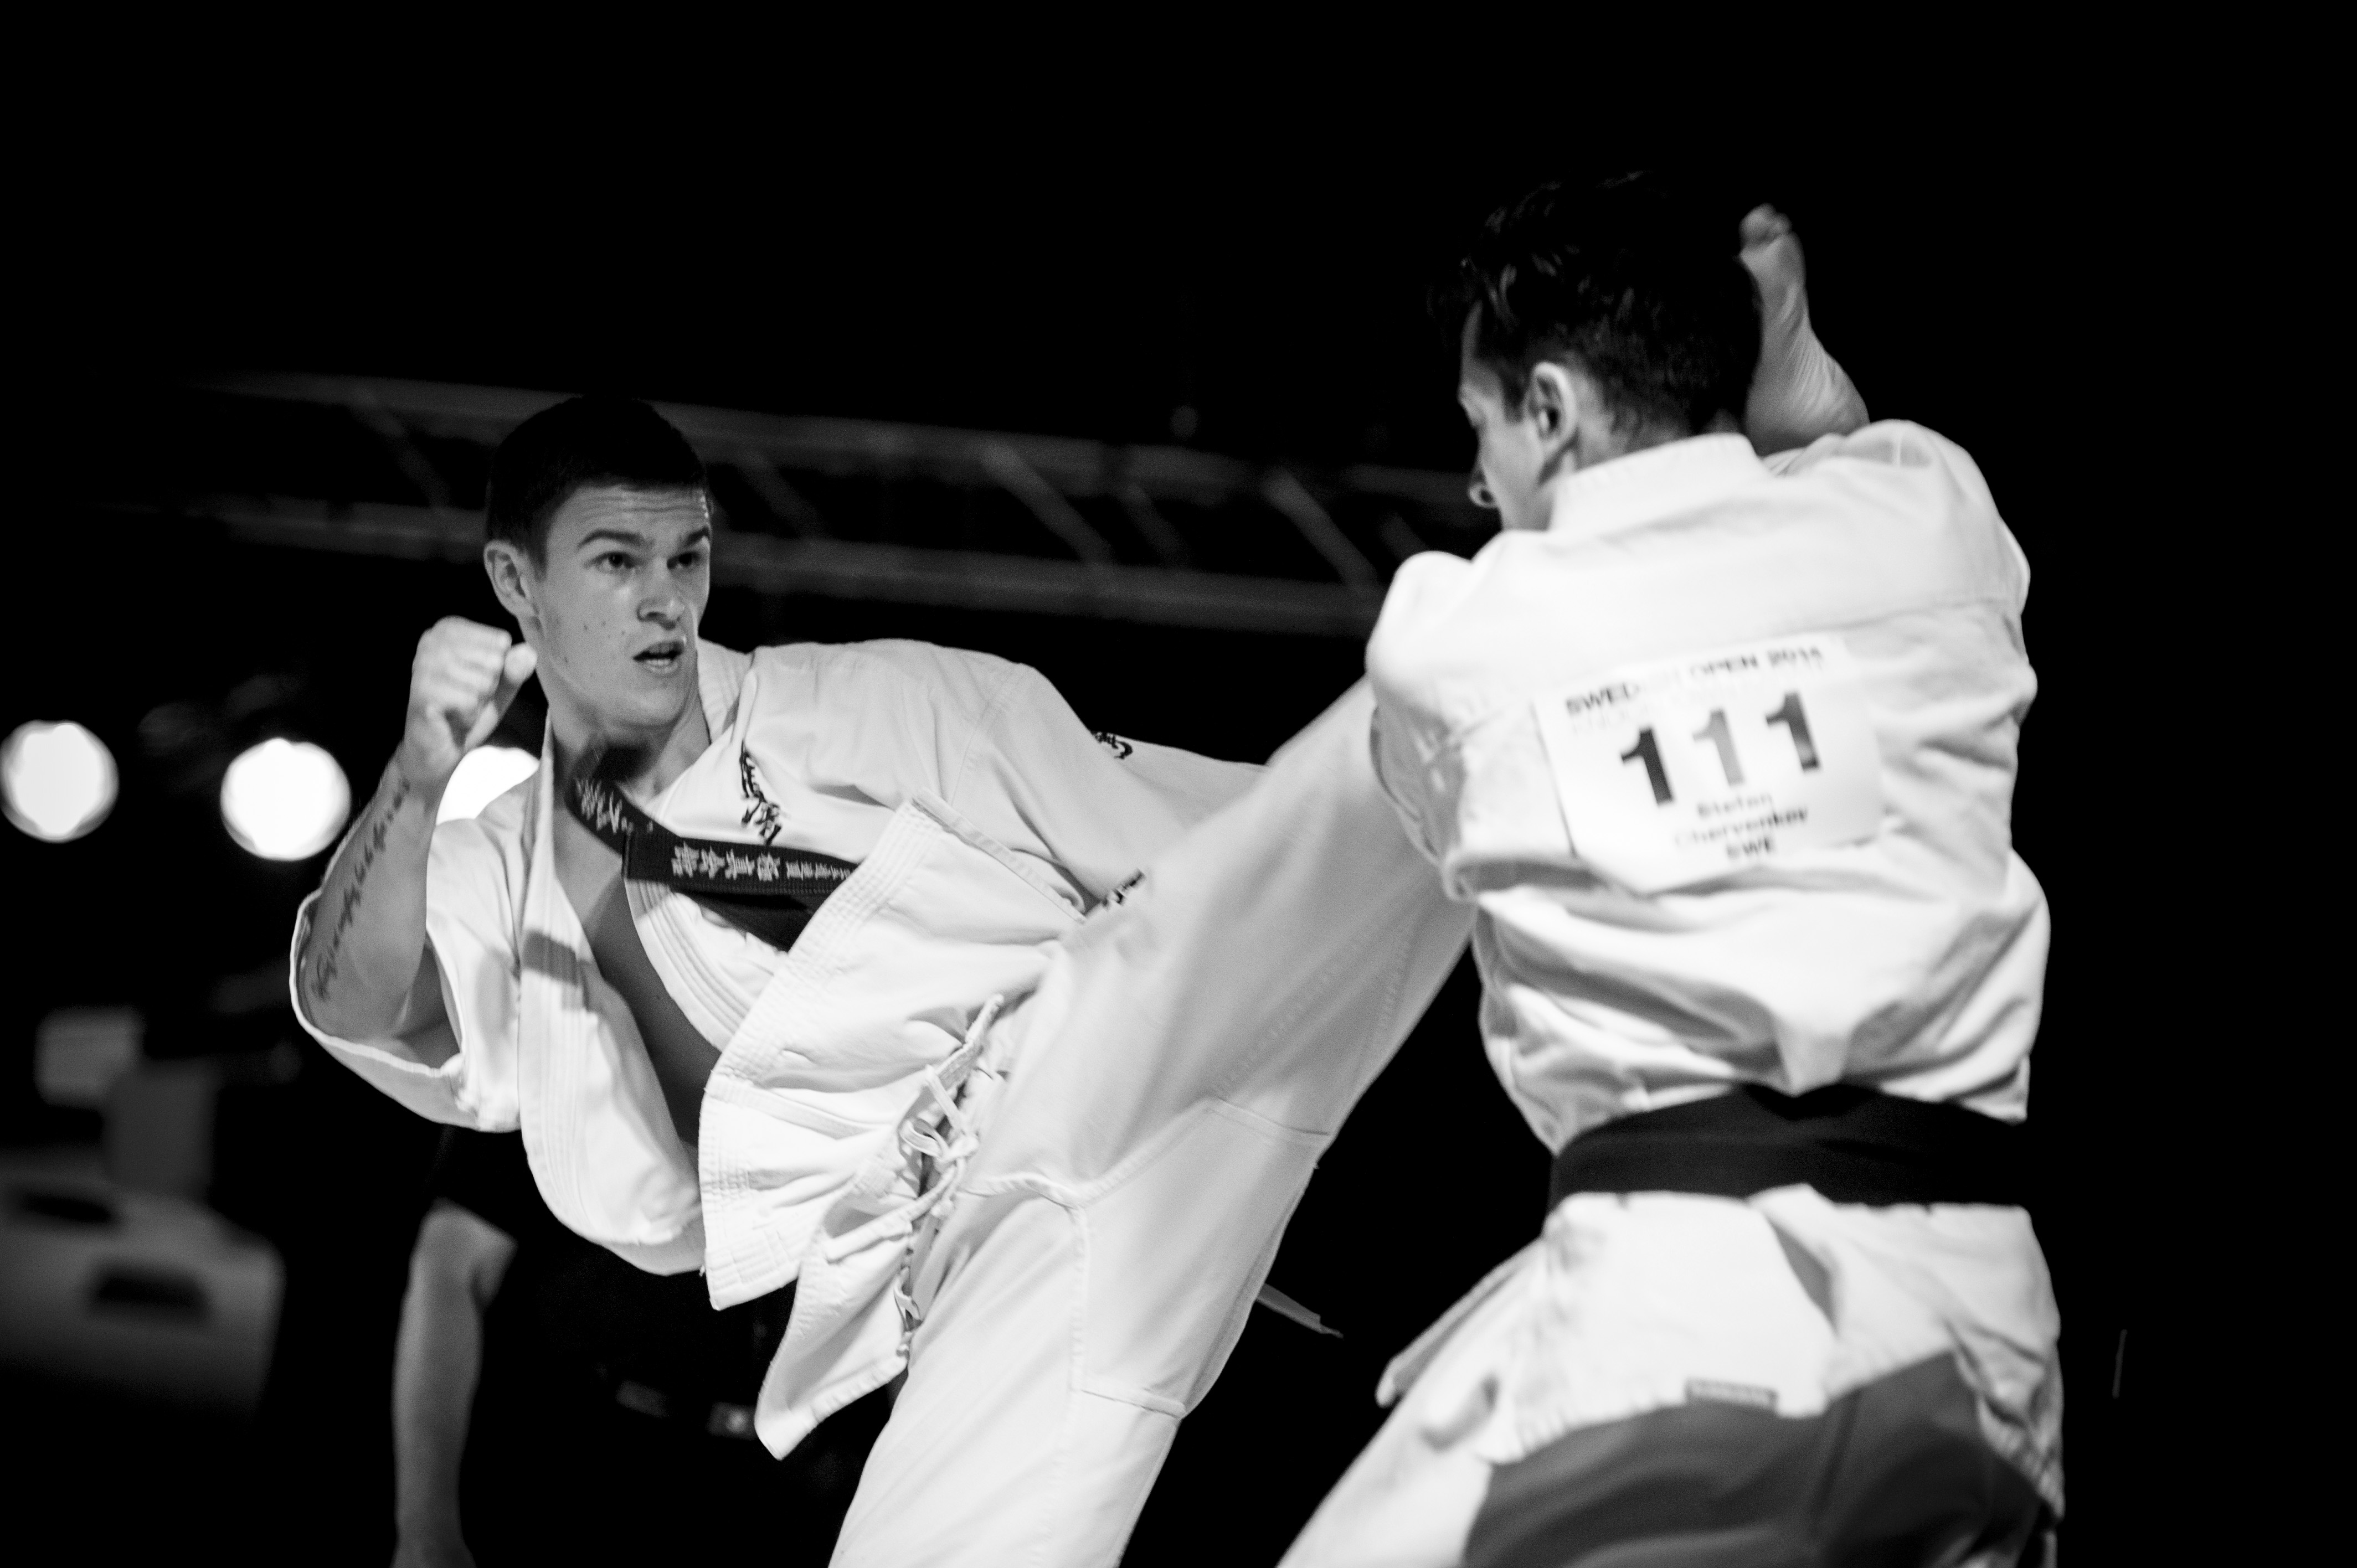 kyokushin karate terdekat Is kyokushin karate still “kyokushin” without